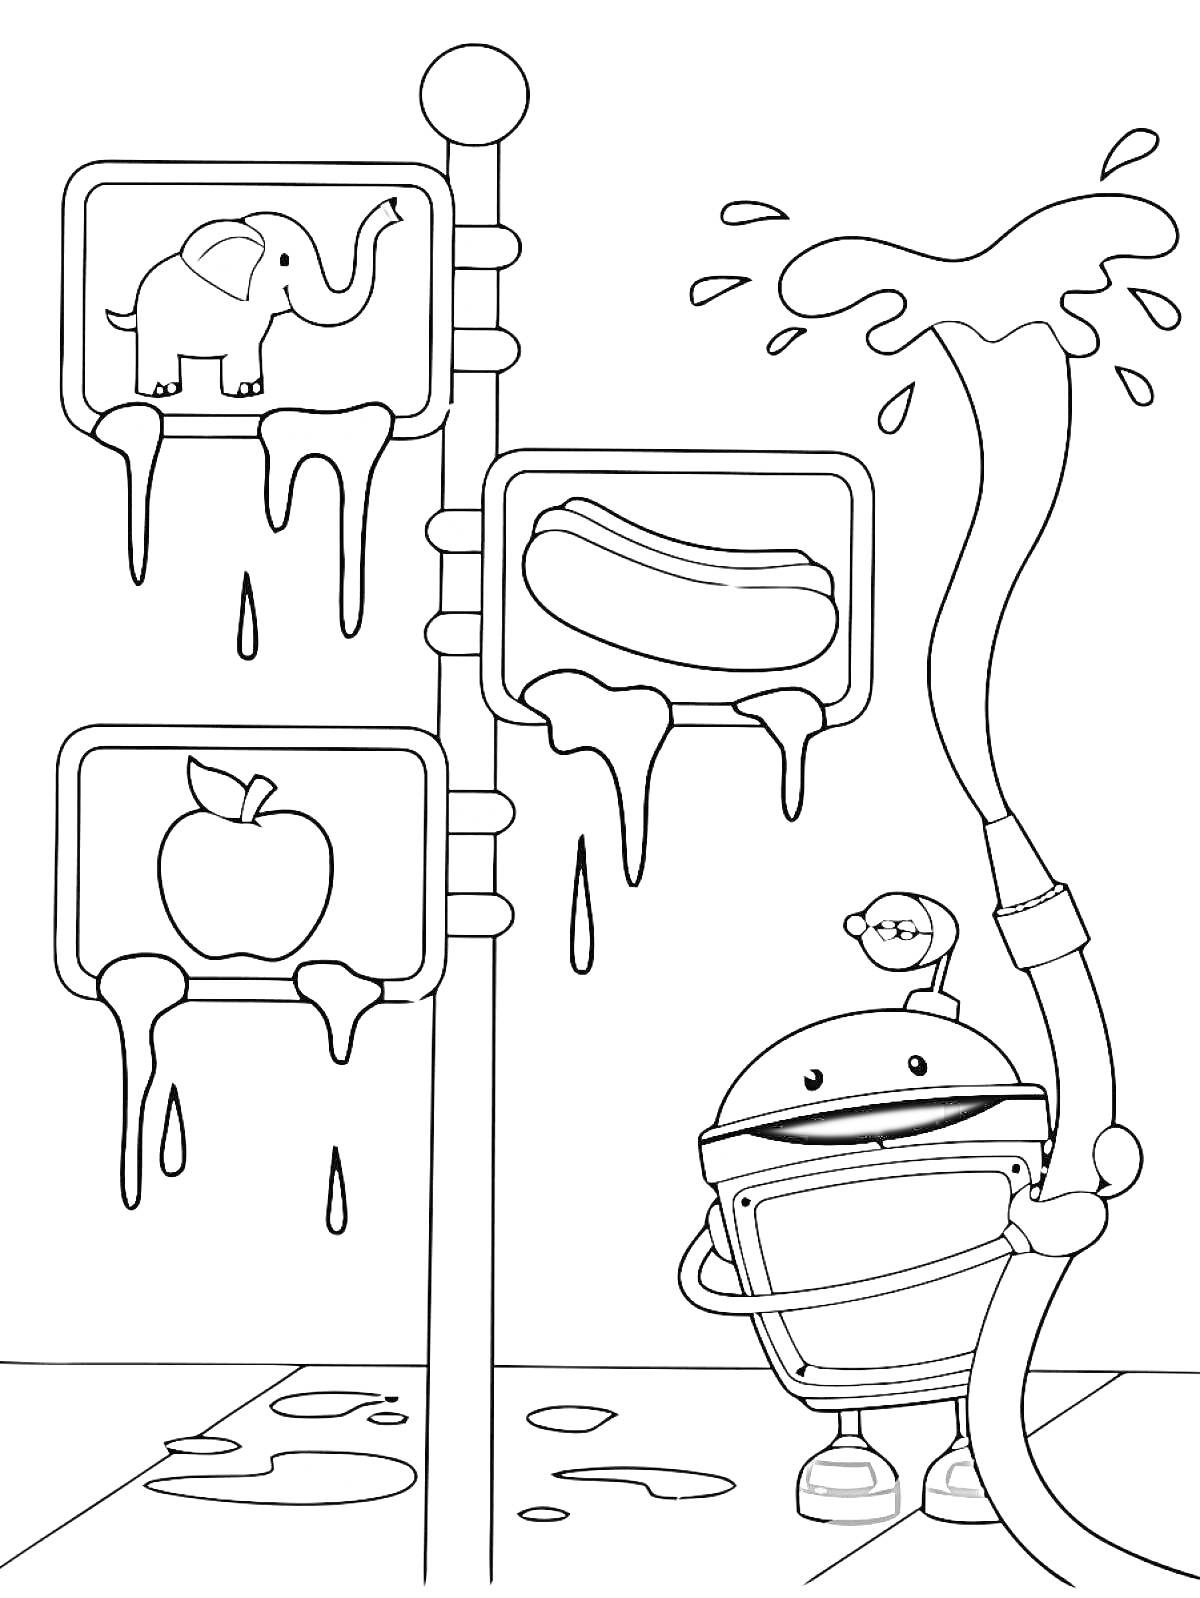 Робот с водным шлангом и три мокрых знака (слон, хот-дог, яблоко)